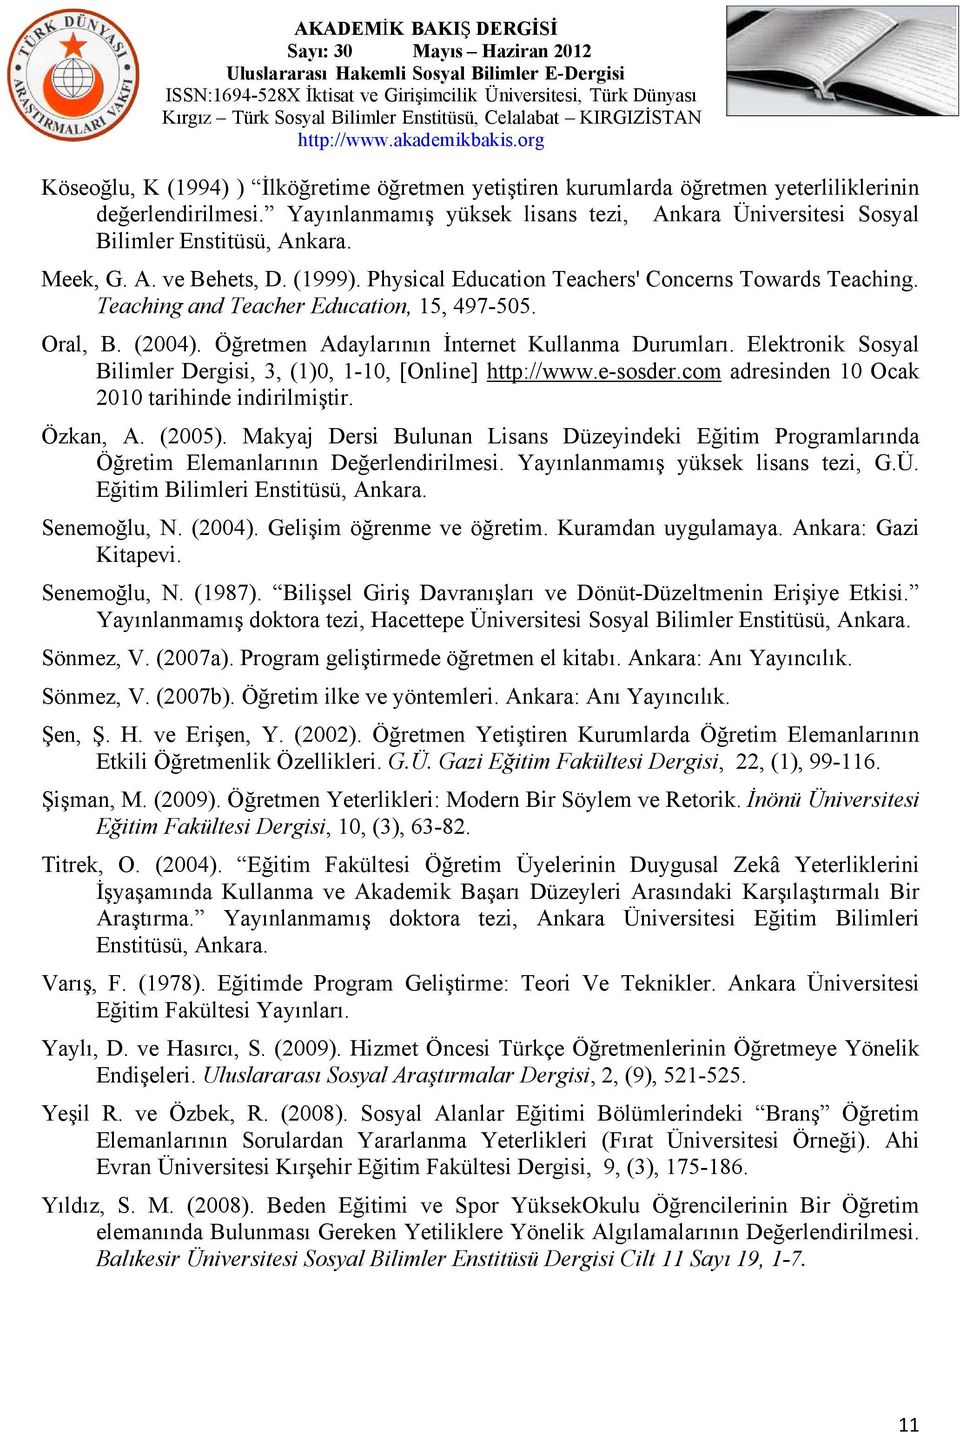 Öğretmen Adaylarının İnternet Kullanma Durumları. Elektronik Sosyal Bilimler Dergisi, 3, (1)0, 1-10, [Online] http://www.e-sosder.com adresinden 10 Ocak 2010 tarihinde indirilmiştir. Özkan, A. (2005).